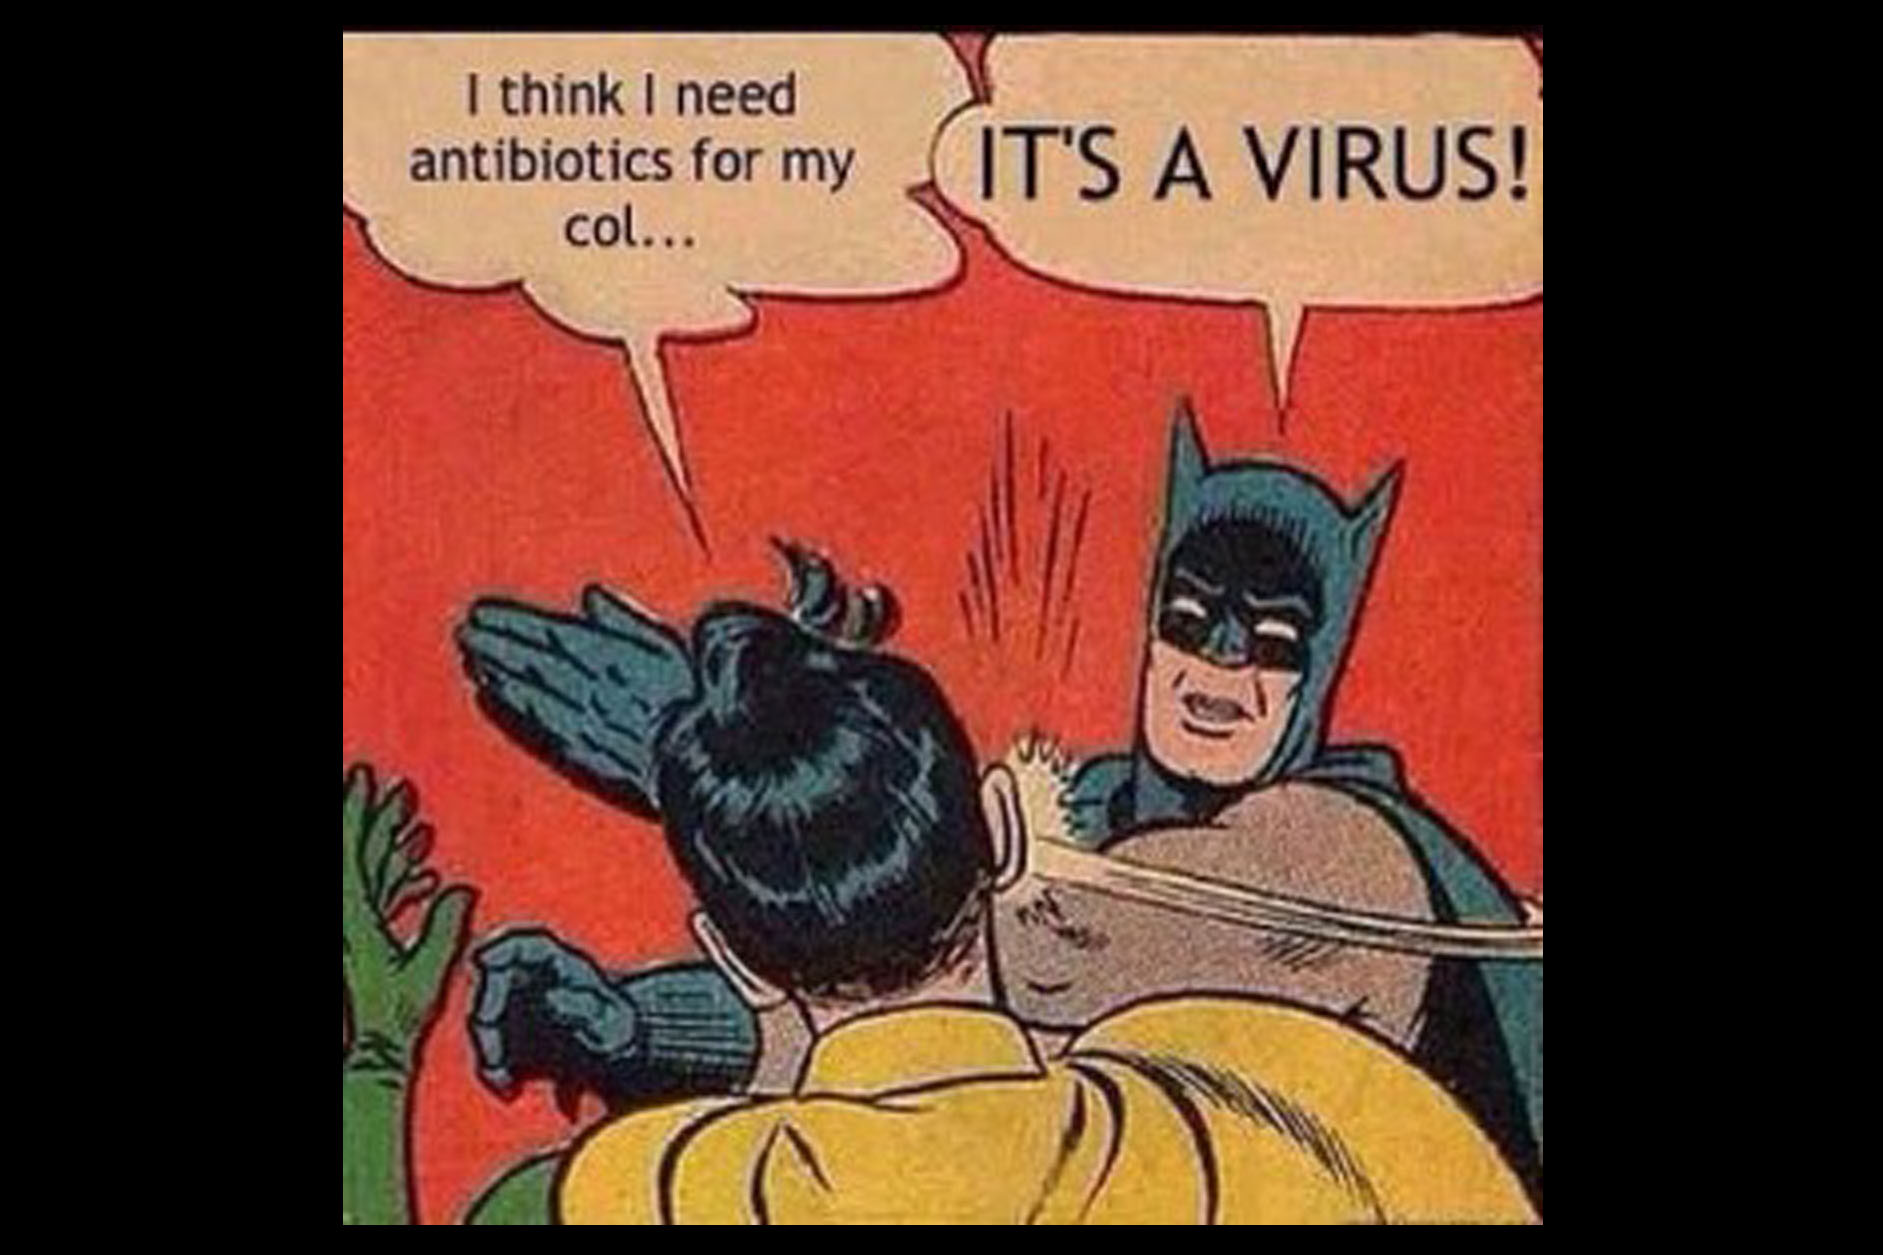 It's a virus...